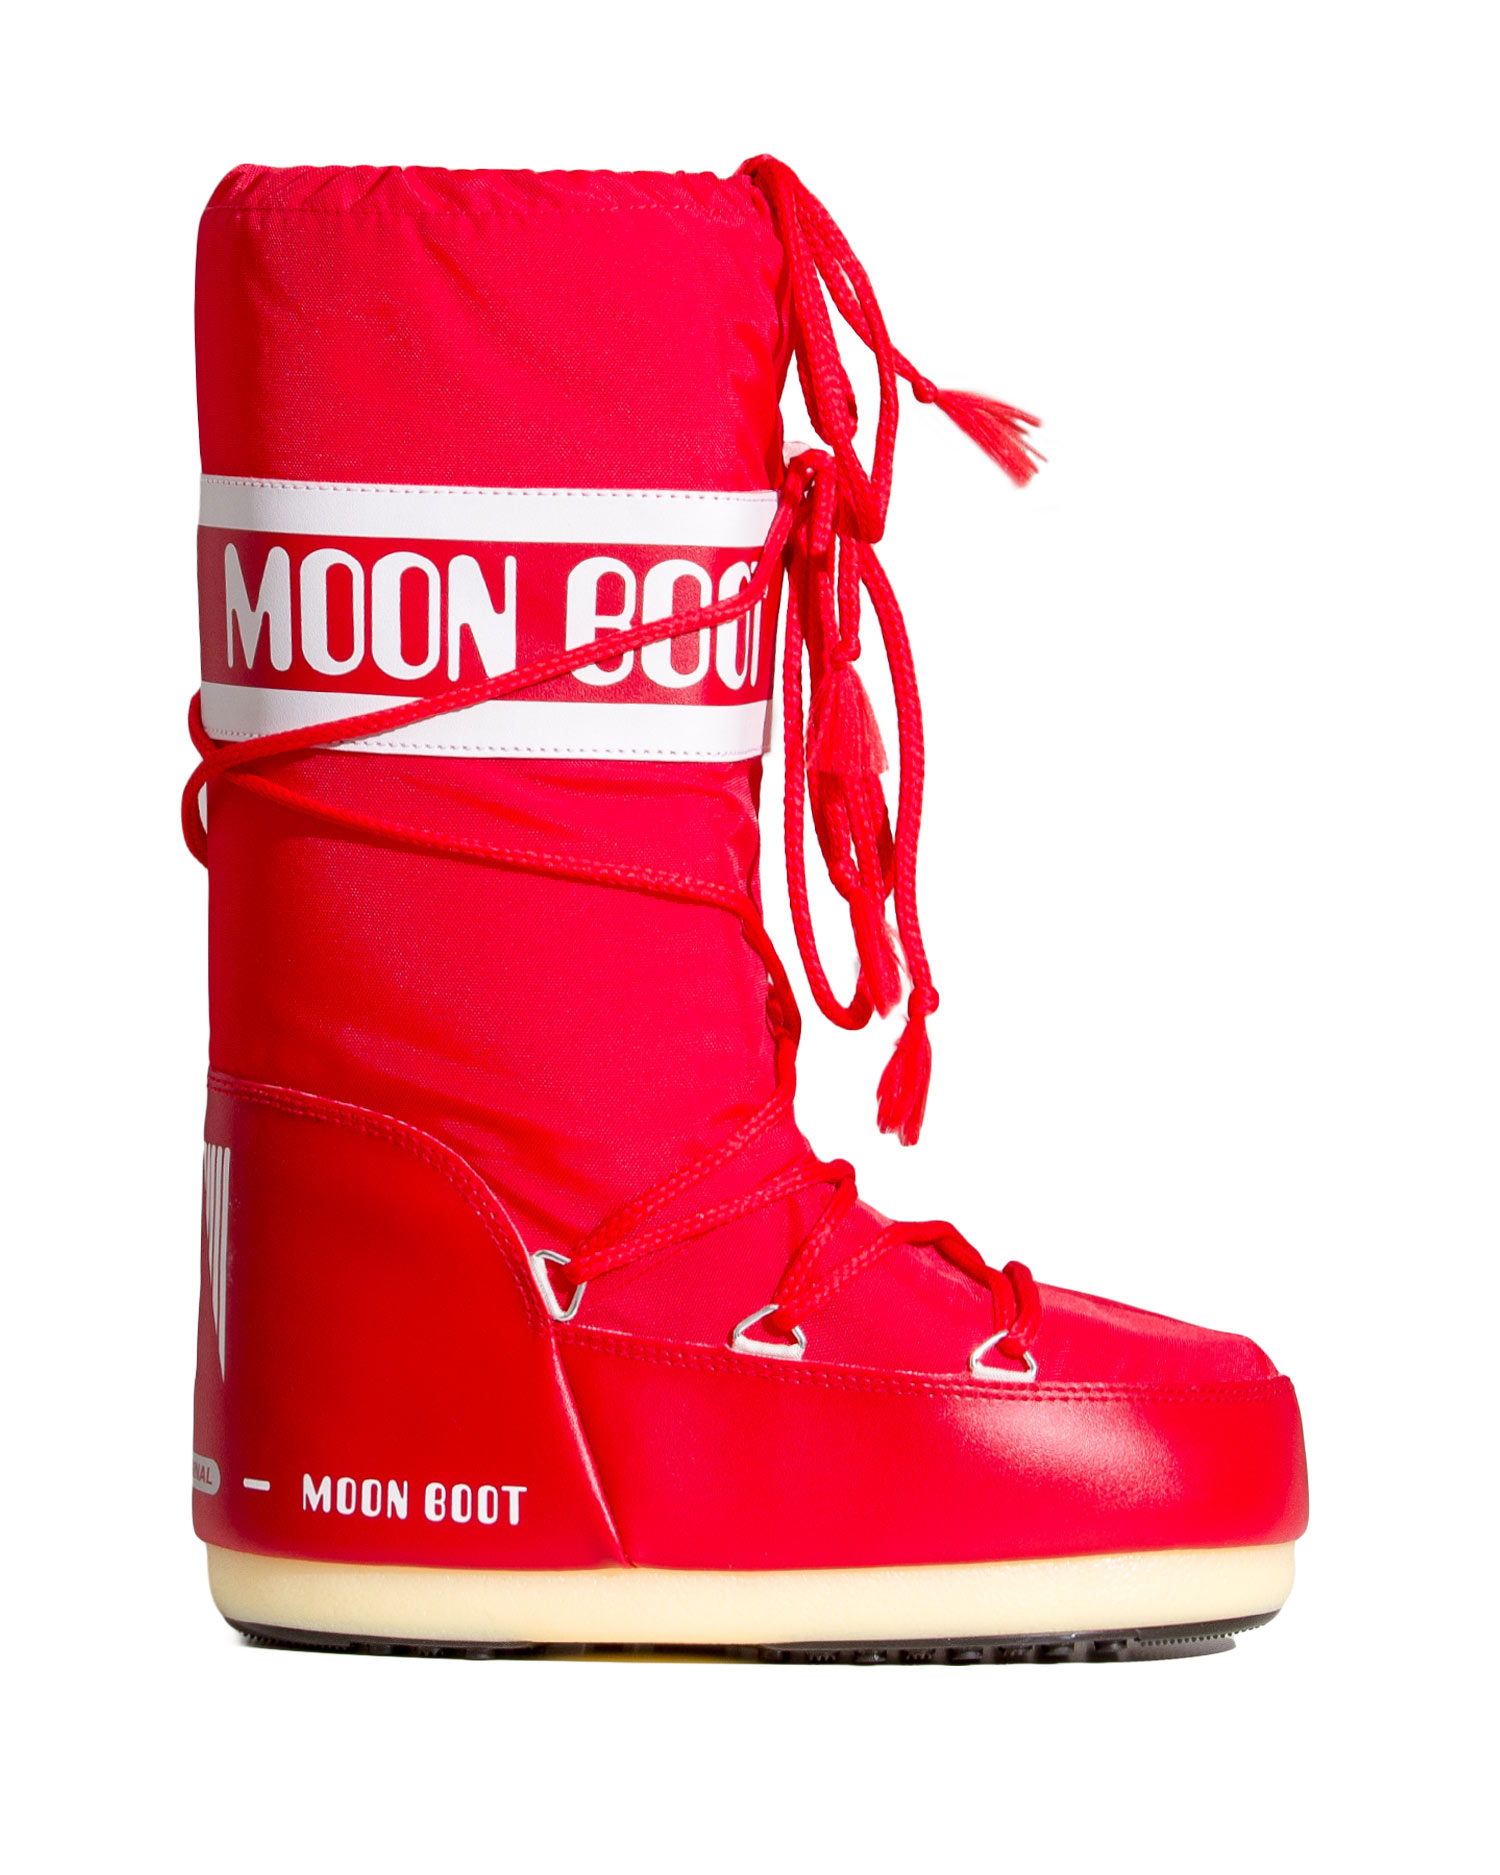 Нейлон сапоги. Moon Boot Gucci. Moon Boot инстасамка. Moon Boot на человеке.